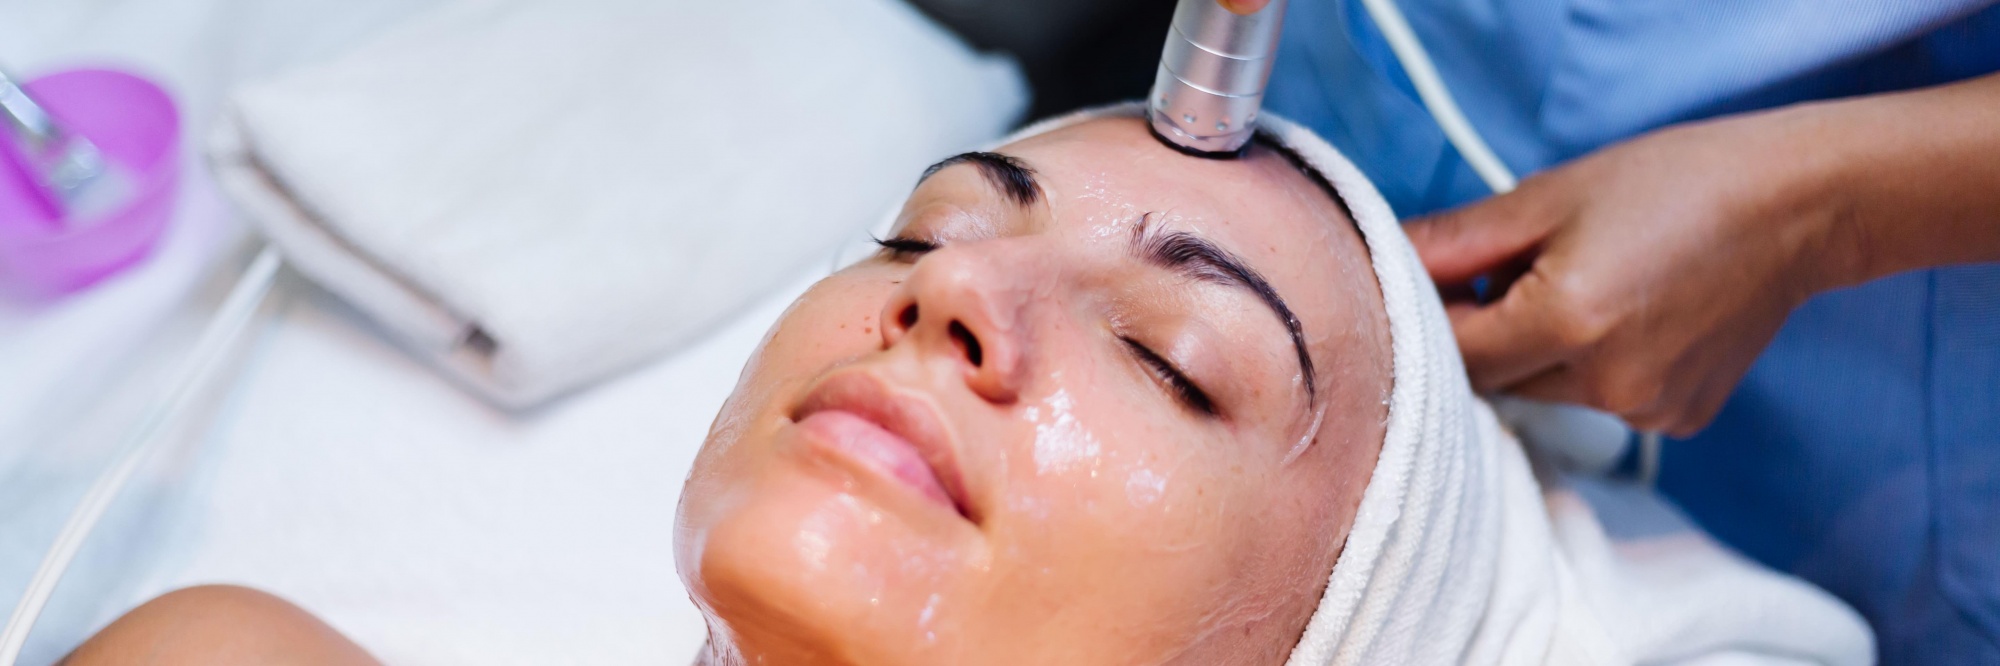 Паровые бани для лица — эффективное очищение кожи